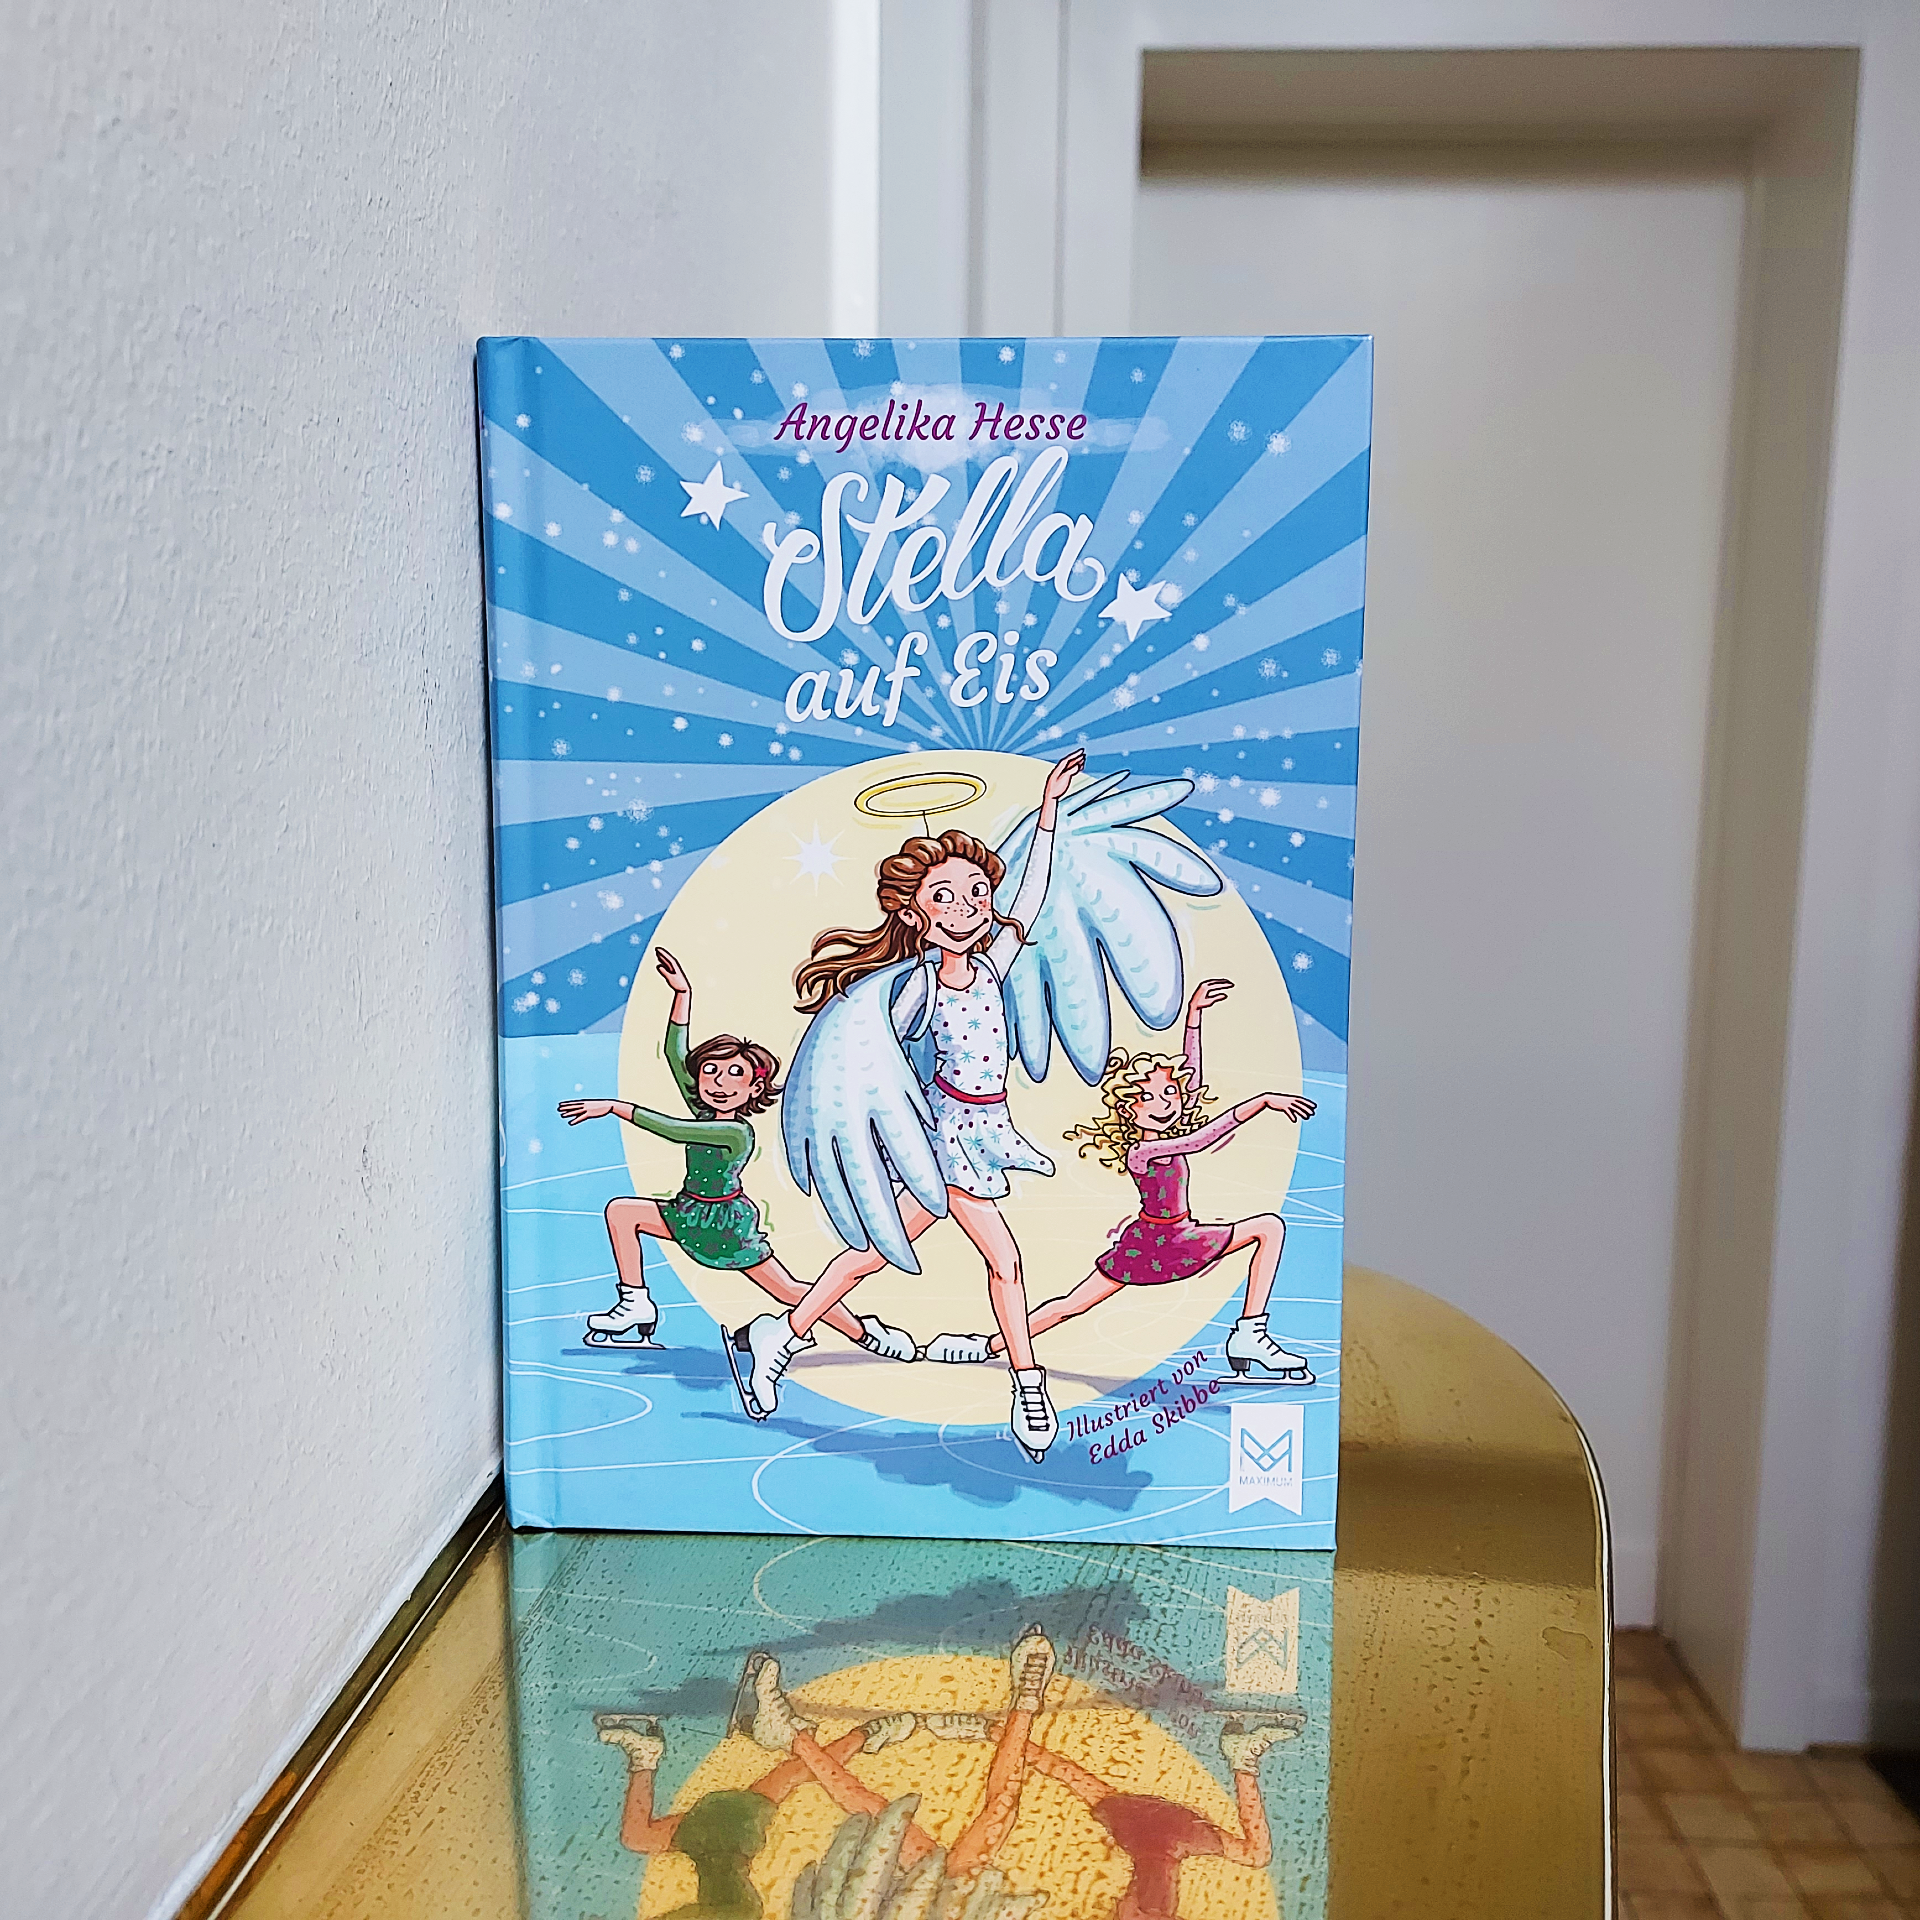 Cover von Angelika Hesses Kinderbuch "Stella auf Eis"